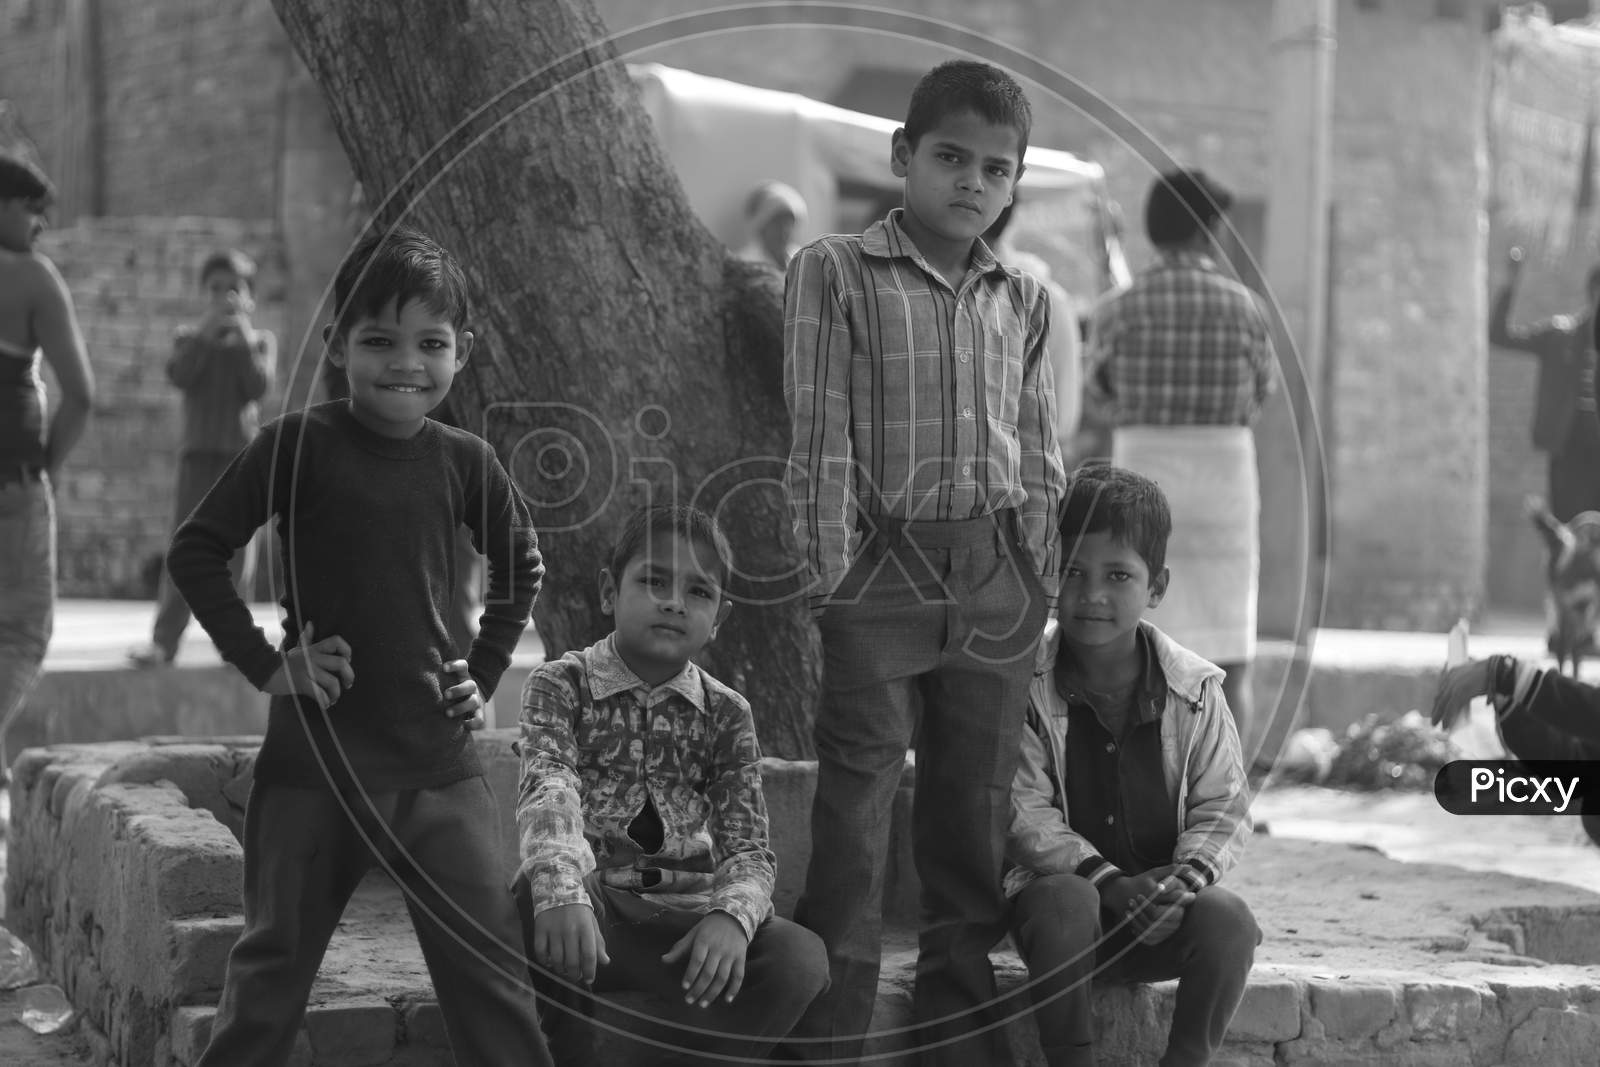 Indian Children in an Rural Village